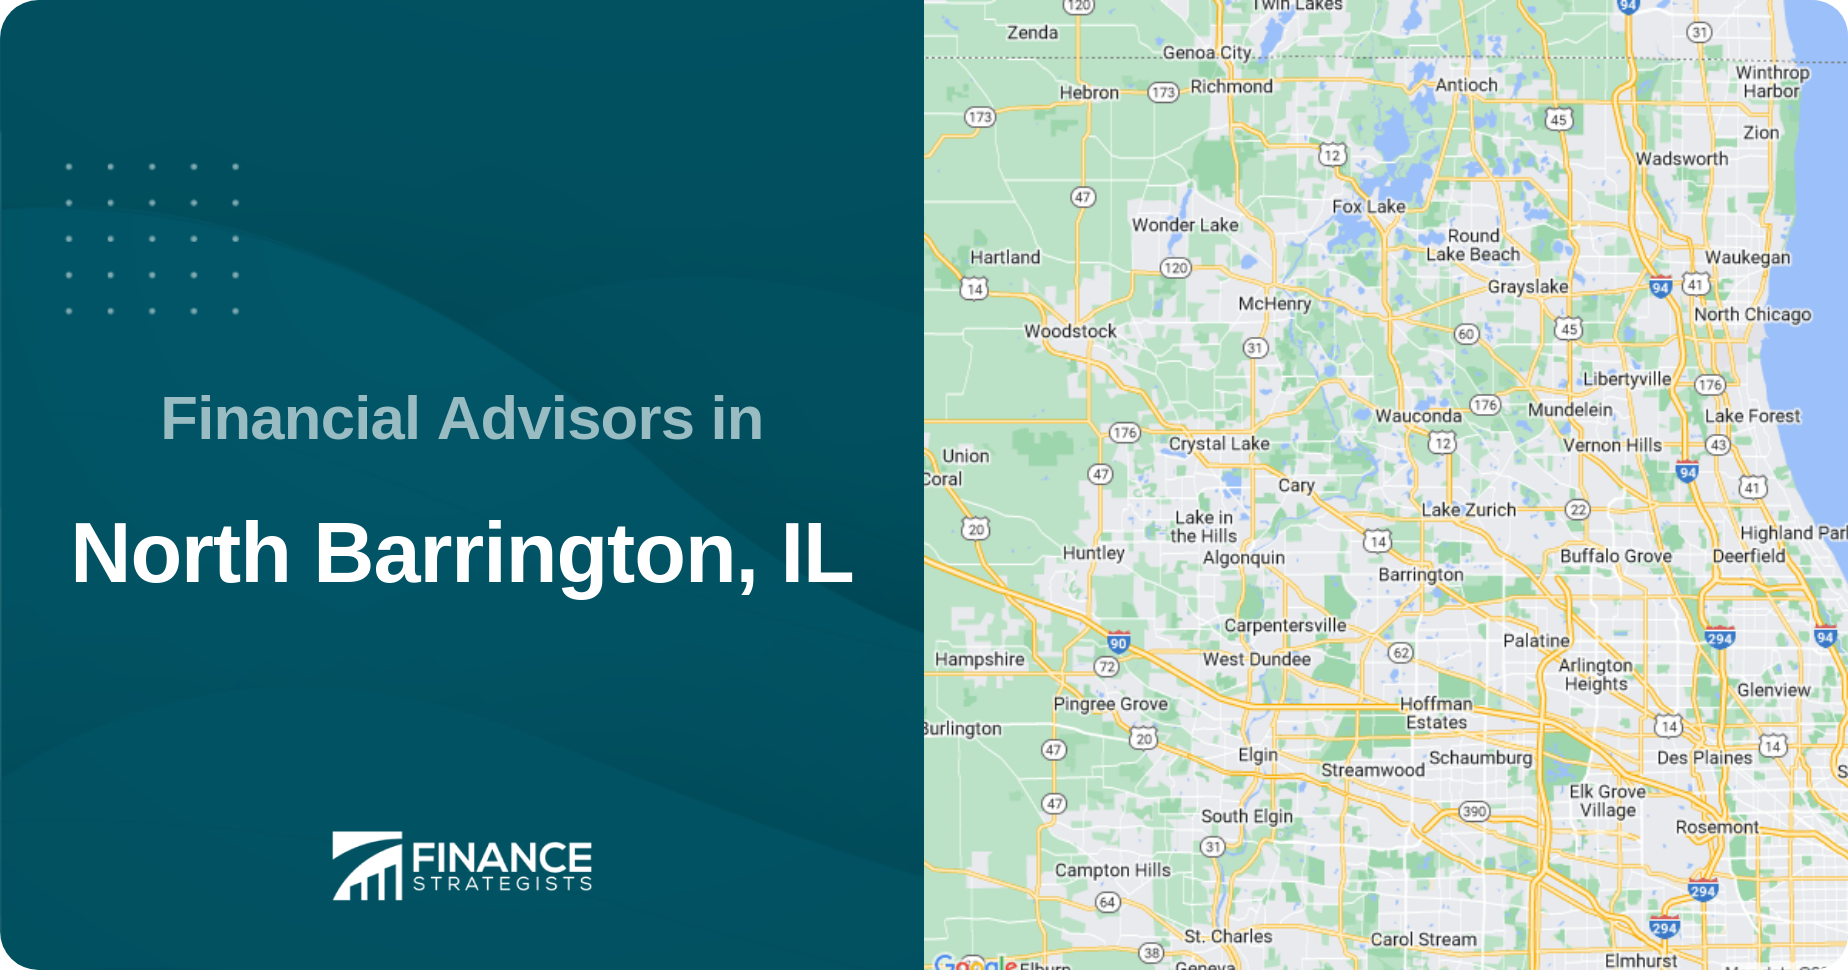 Financial Advisors in North Barrington, IL